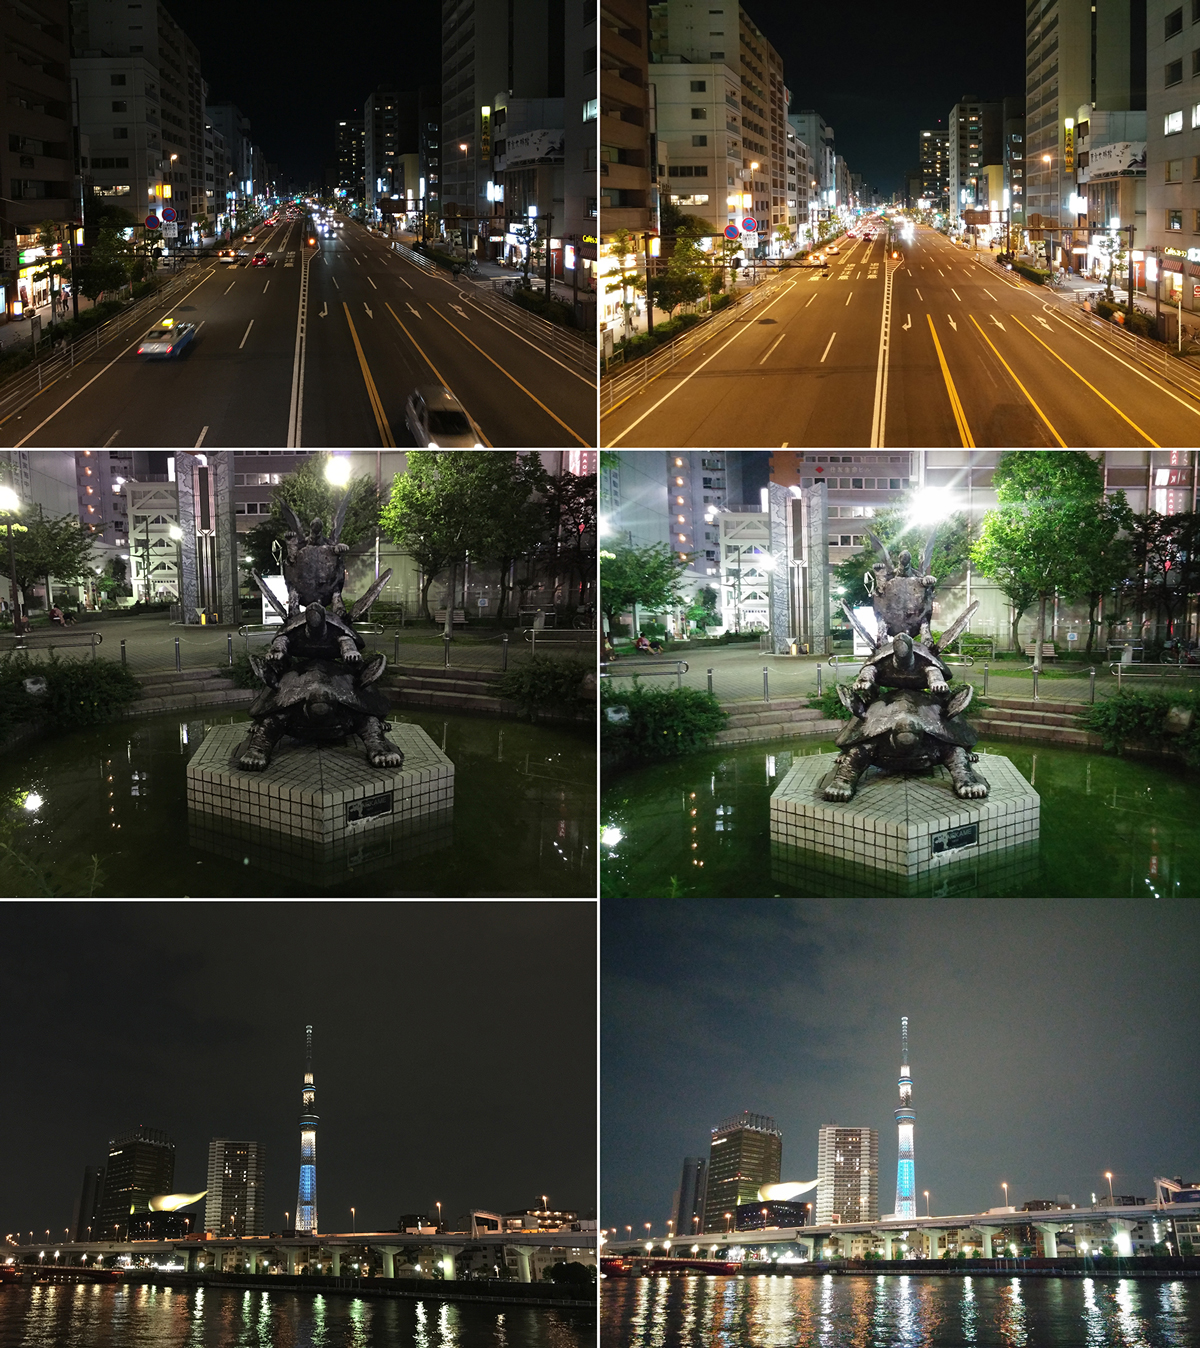 เทียบภาพถ่าย iPhone 6 Plus กับ LG G3 ทั้งกลางวันกลางคืน